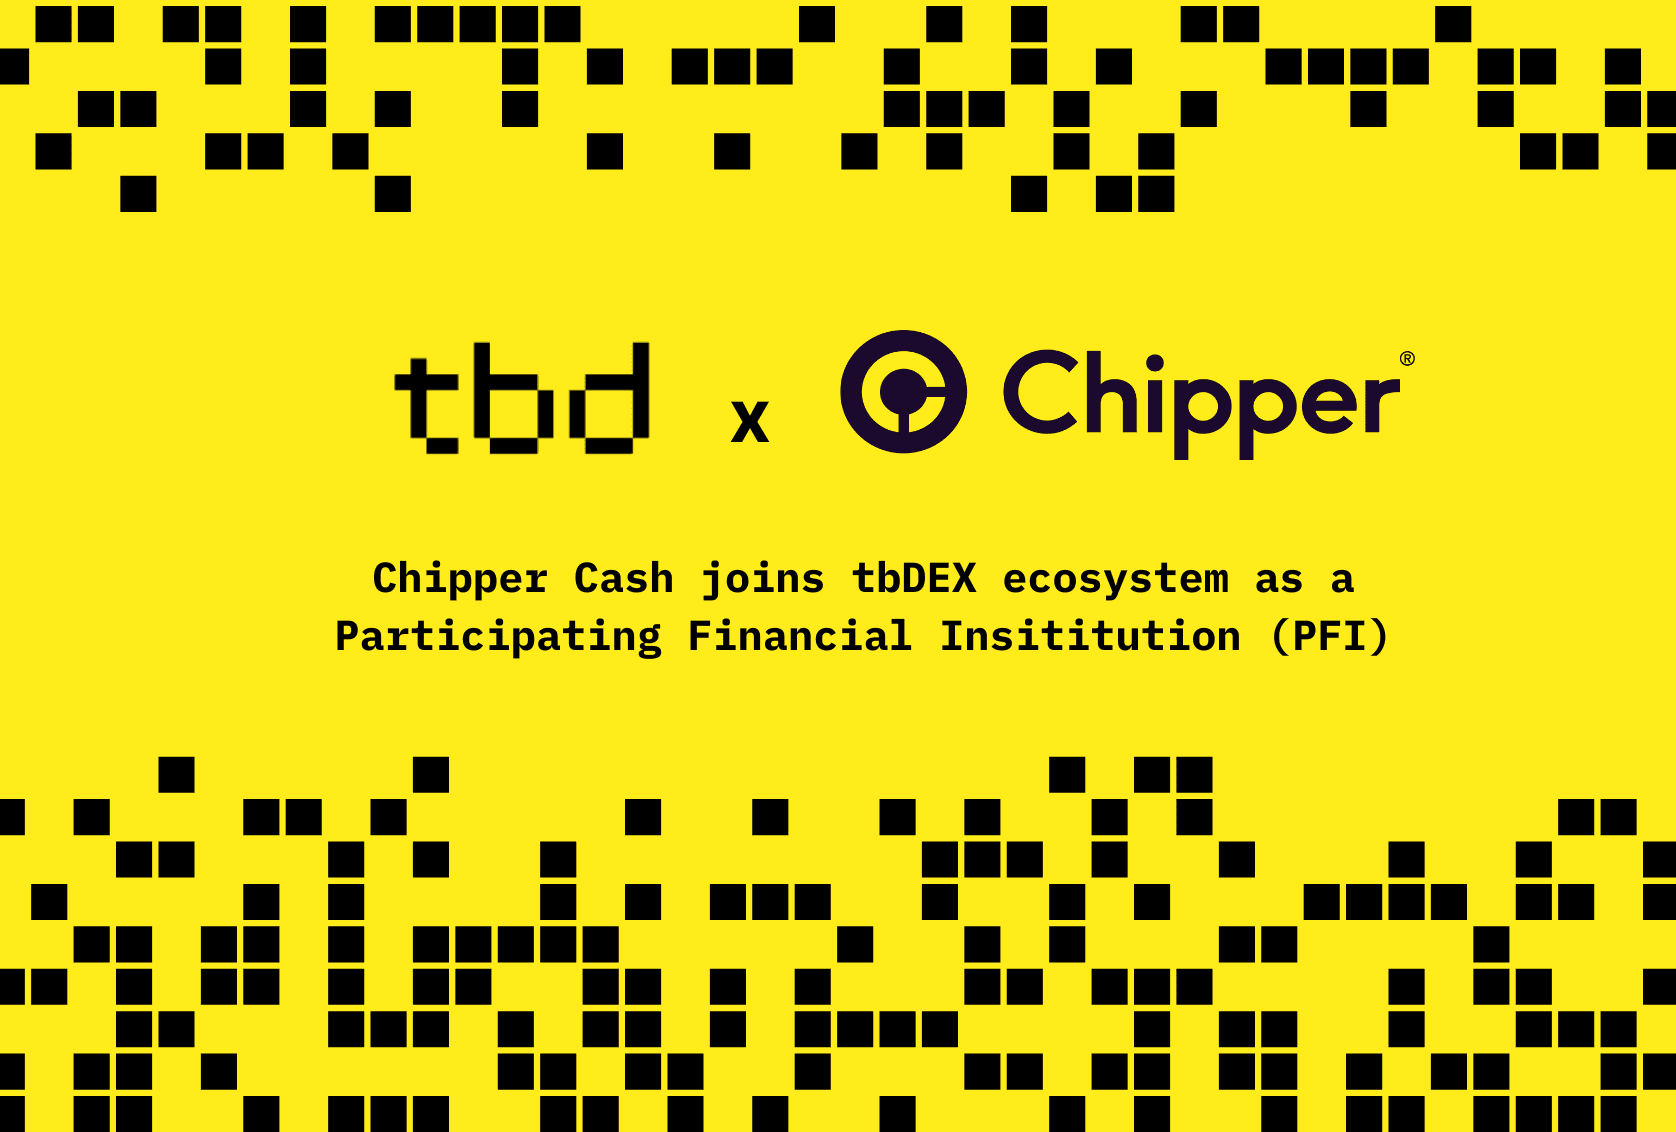 tbd-chipper-tbdex